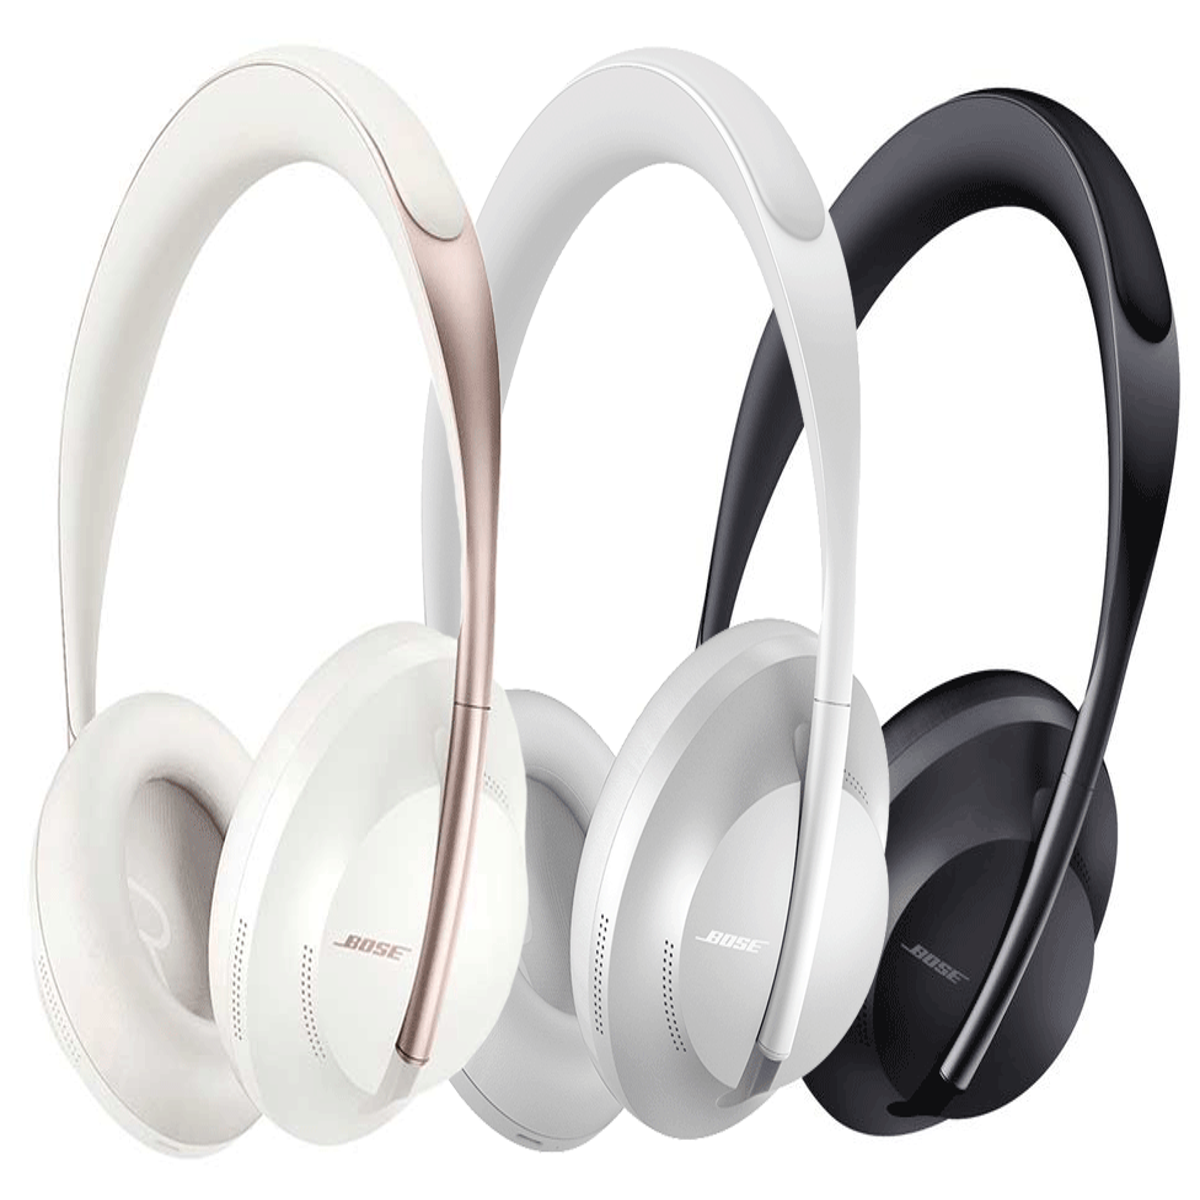 Også Pekkadillo Sløset Save 35% on these Bose 700 noise-cancelling headphones | Eurogamer.net